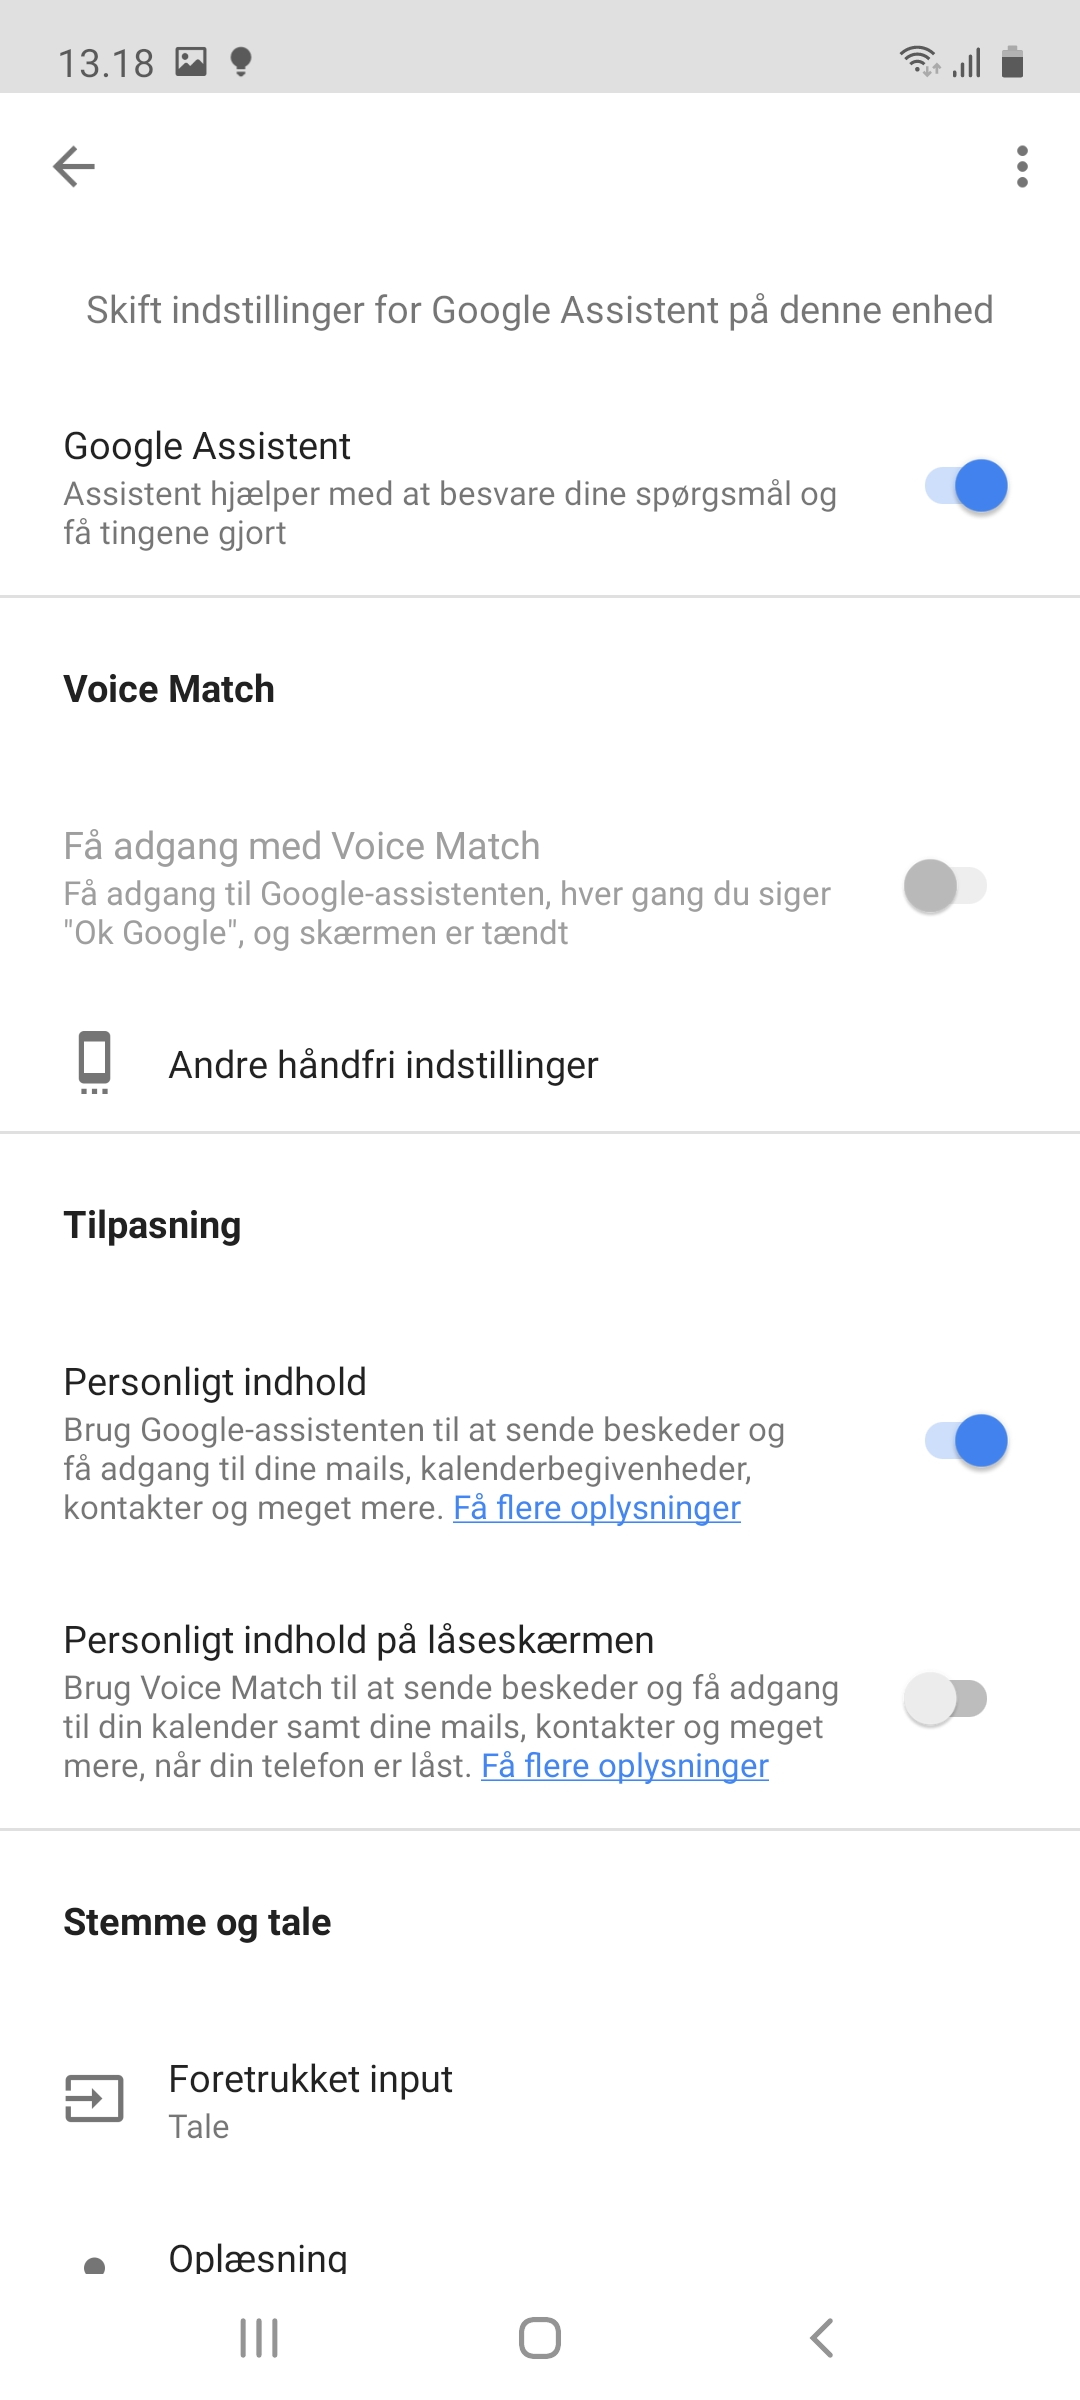 Hvordan ændrer jeg stemmen på Google Assistant?